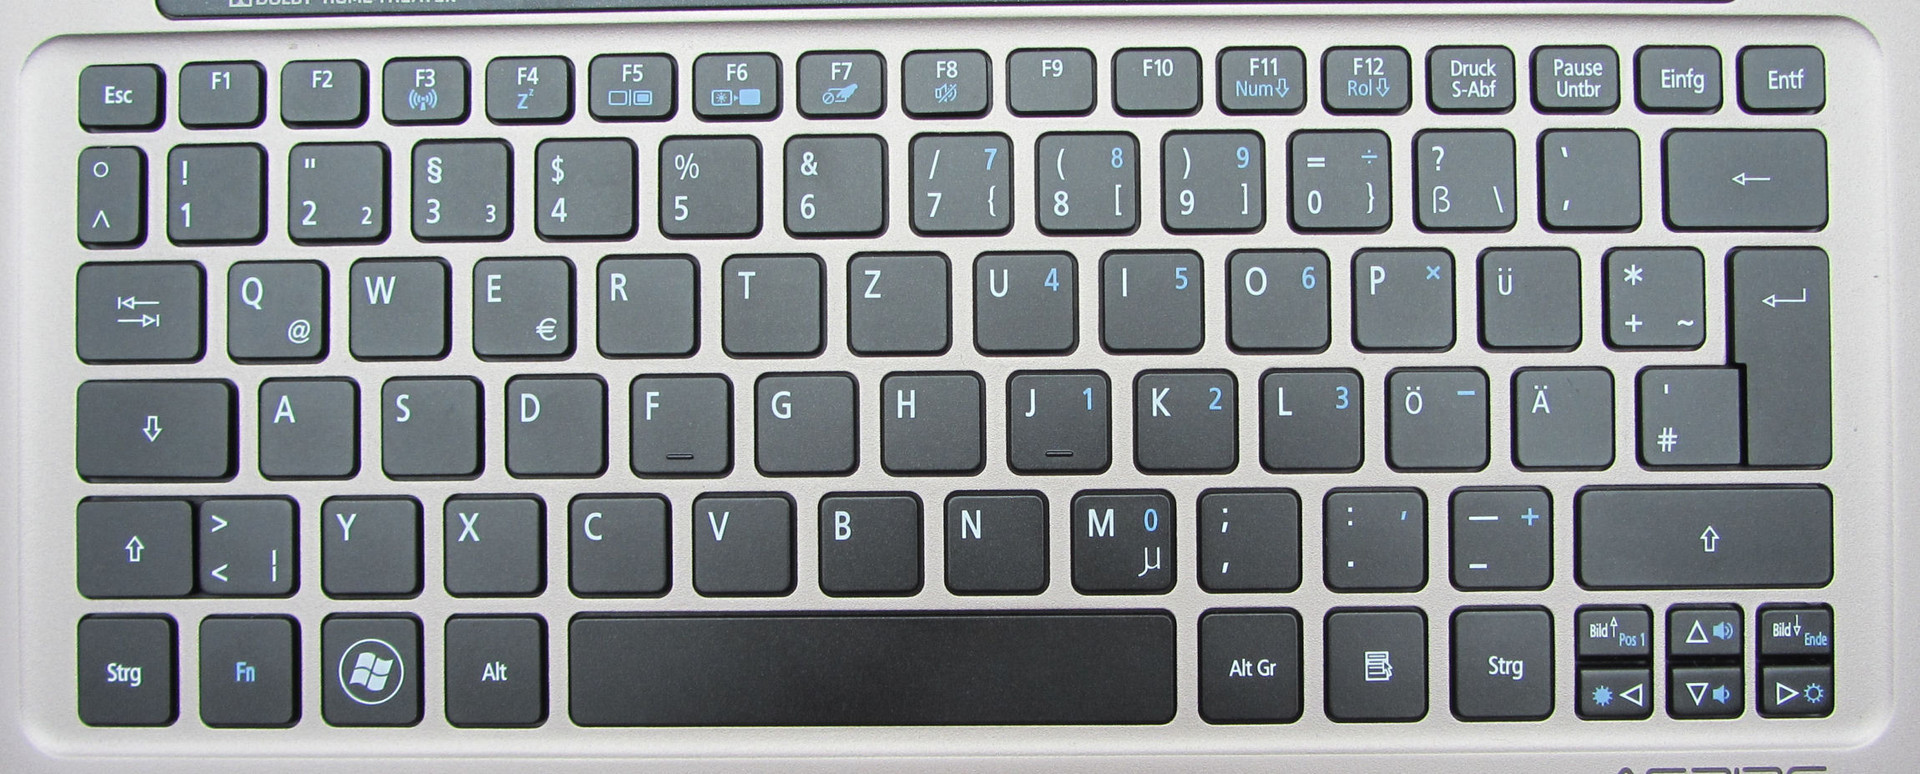 Deutsches Tastaturlayout Original Tastatur Notebook Keyboard Deutsch QWERTZ für Acer Aspire S3-391-33224G52add S3-391-53314 S3-391-53314G12add S3-391-53314G52add S3-391-53334 S3-391-6046 S3-391-6616